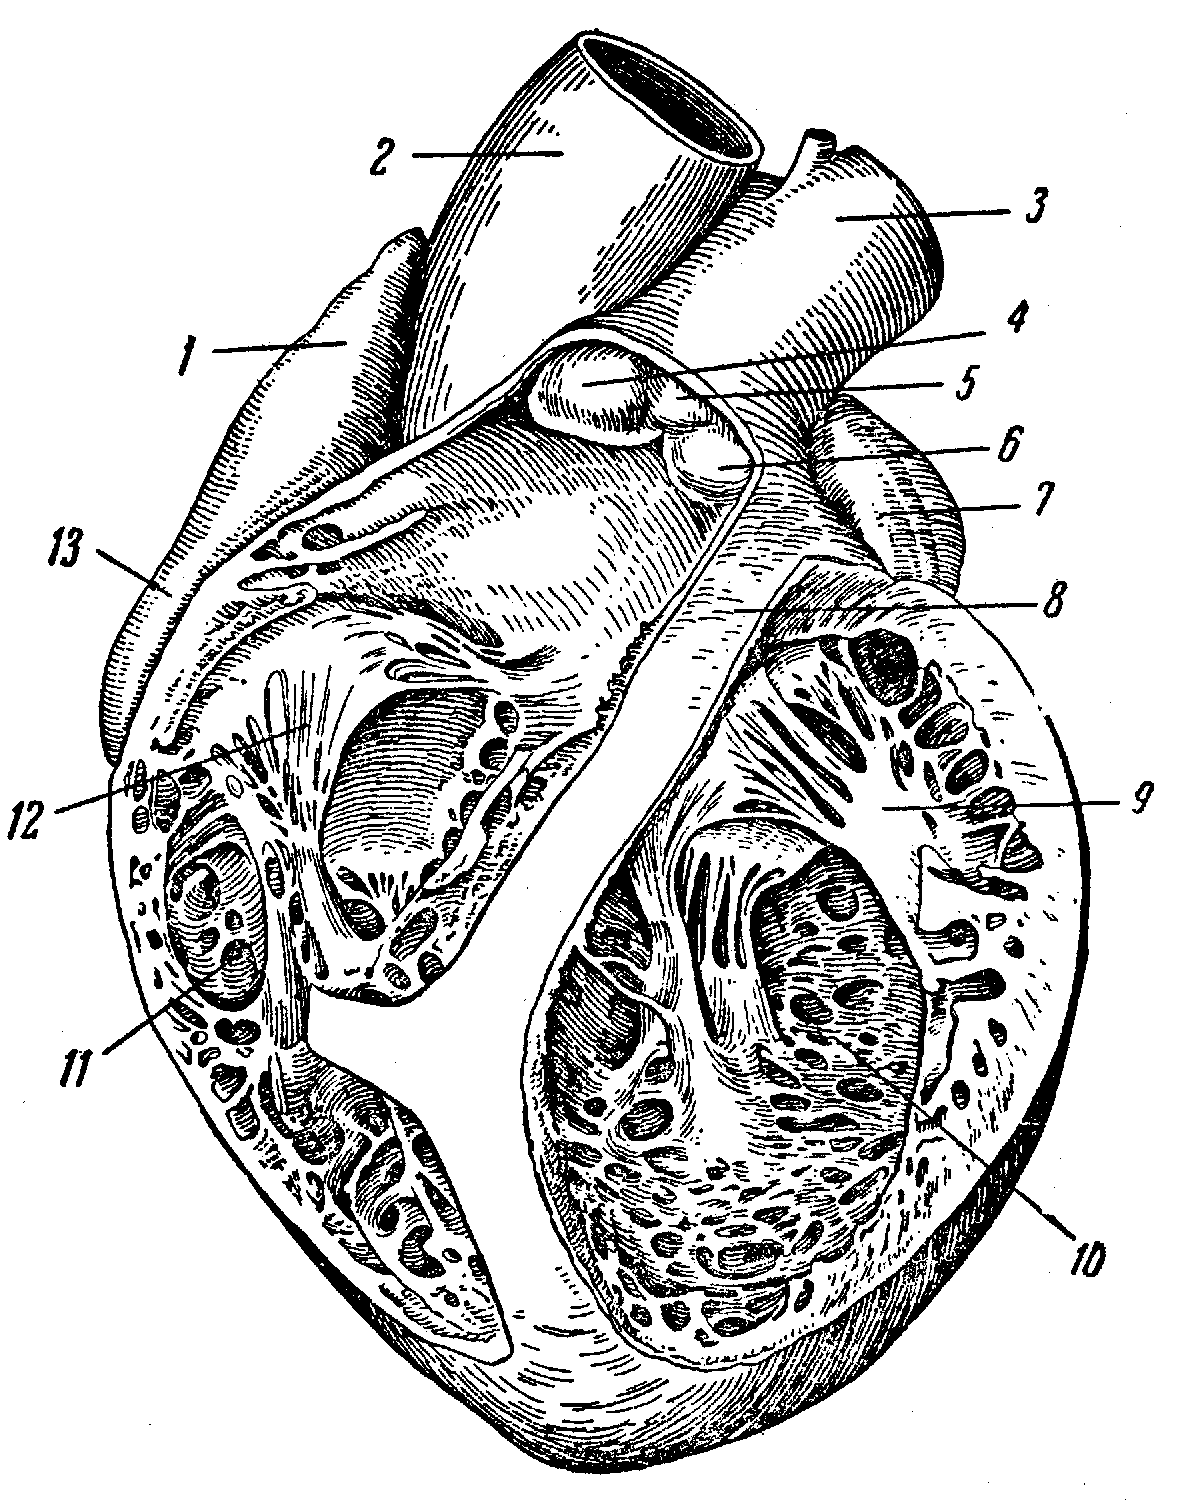 Правое предсердие отделено от правого желудочка. Сердце свиньи анатомия. Вскрытый правый желудочек. Анатомические образования левого предсердия. Правое предсердие и правый желудочек.